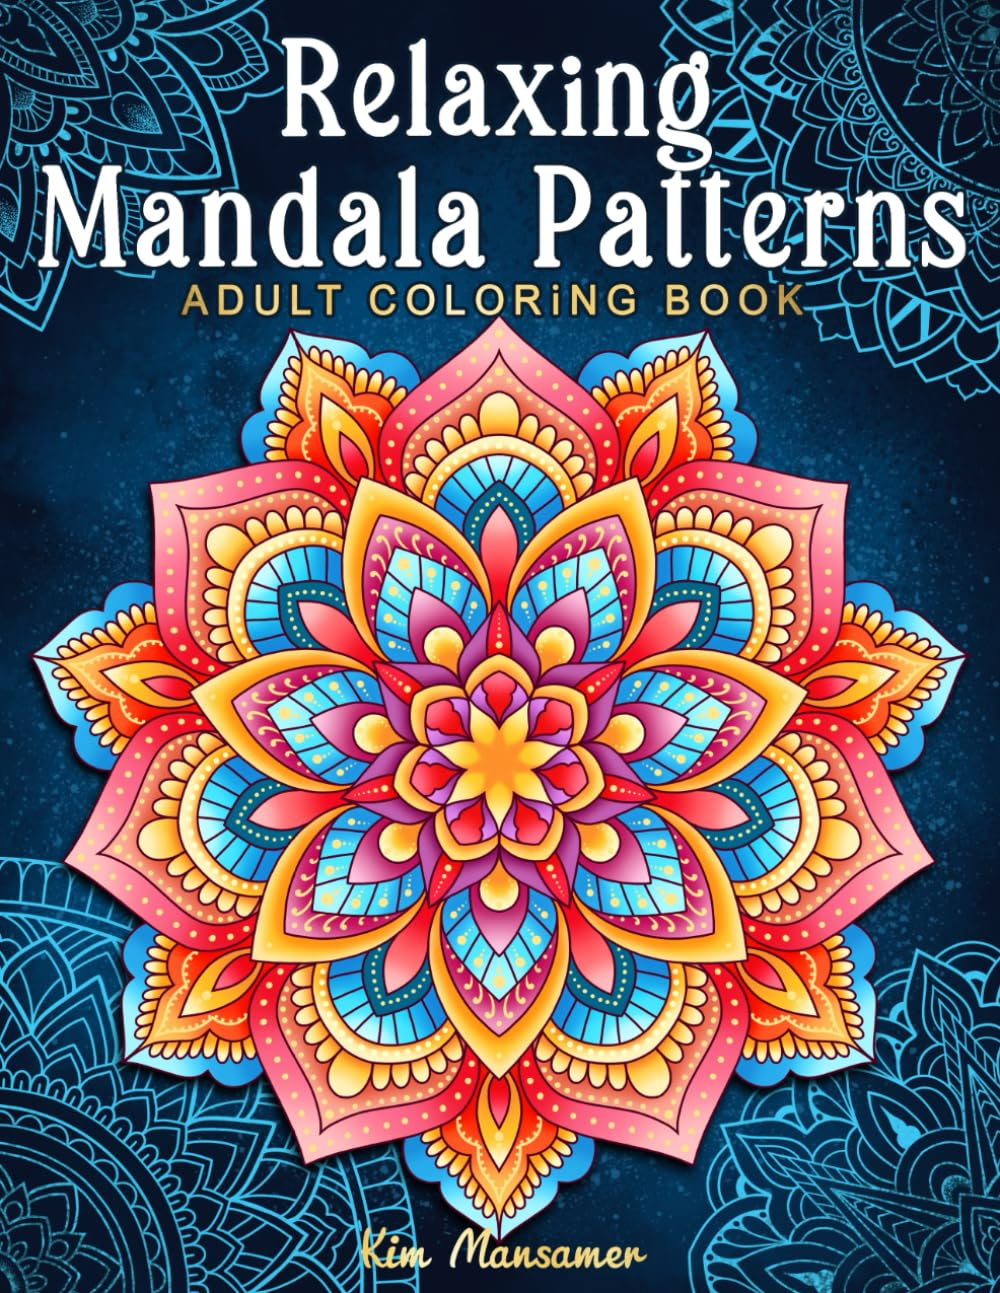 mandala patterms coloring book